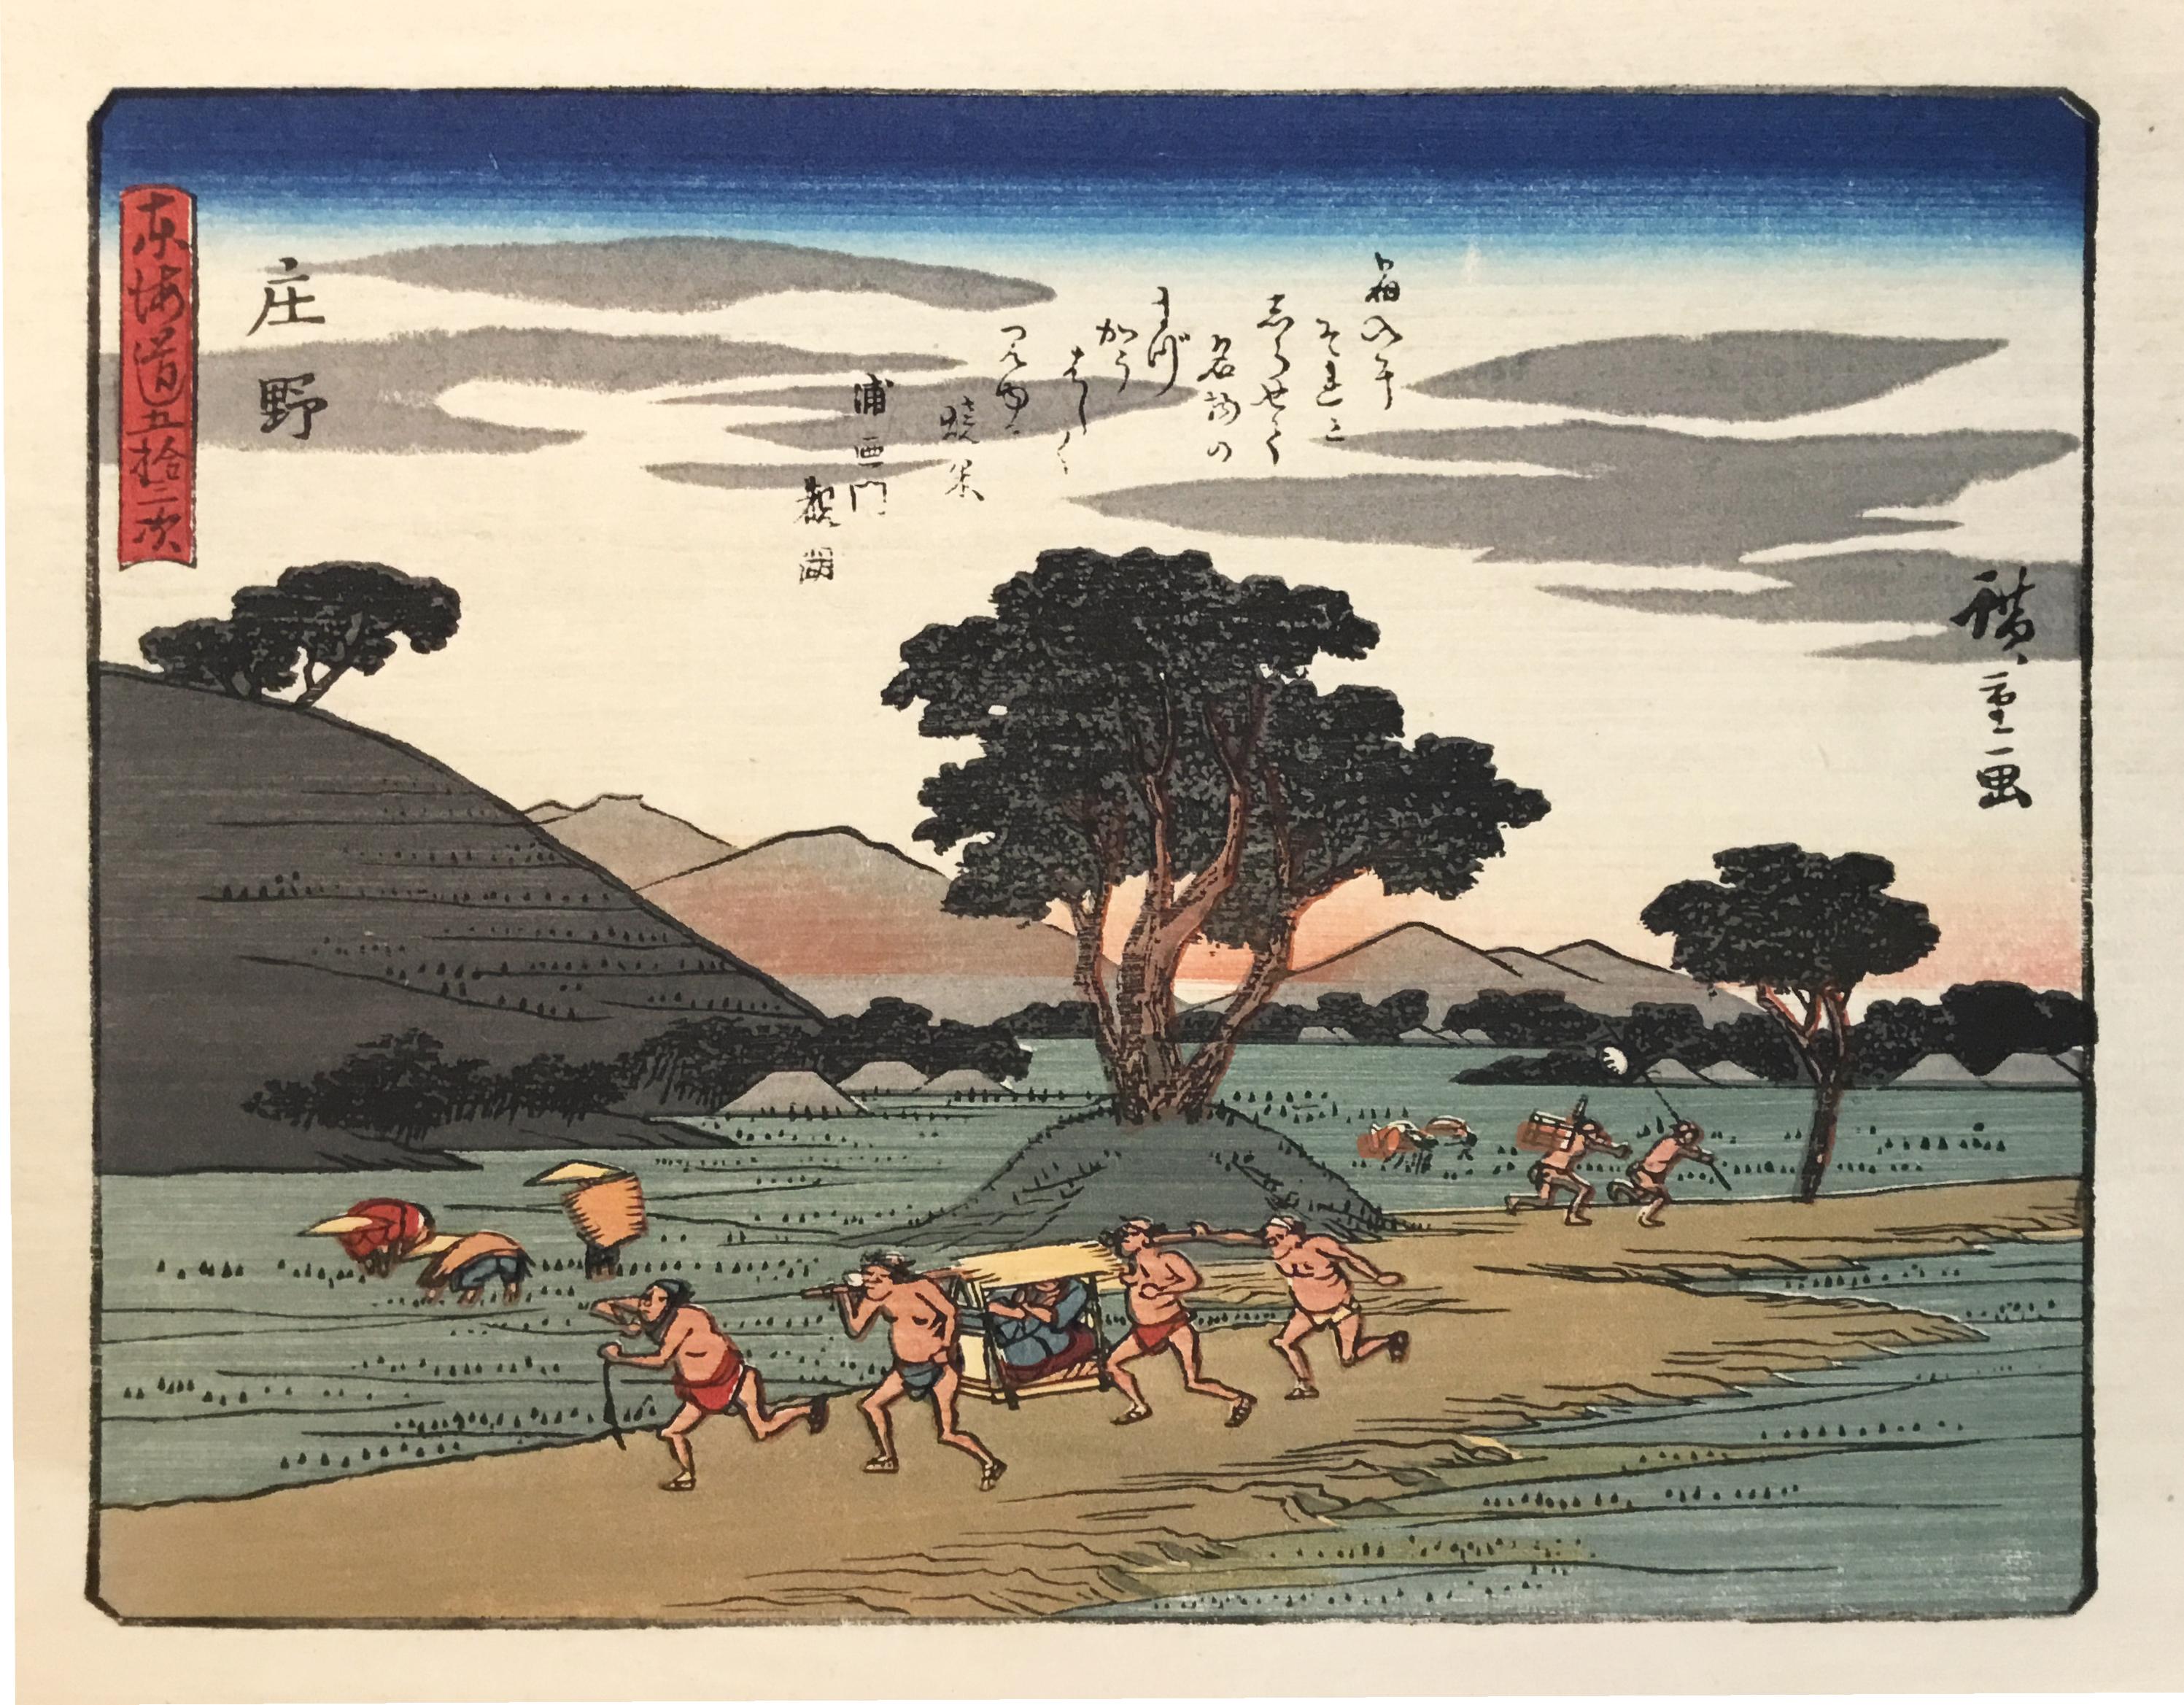 'View of Shono', After Utagawa Hiroshige, Ukiyo-E Woodblock, Tokaido, Edo